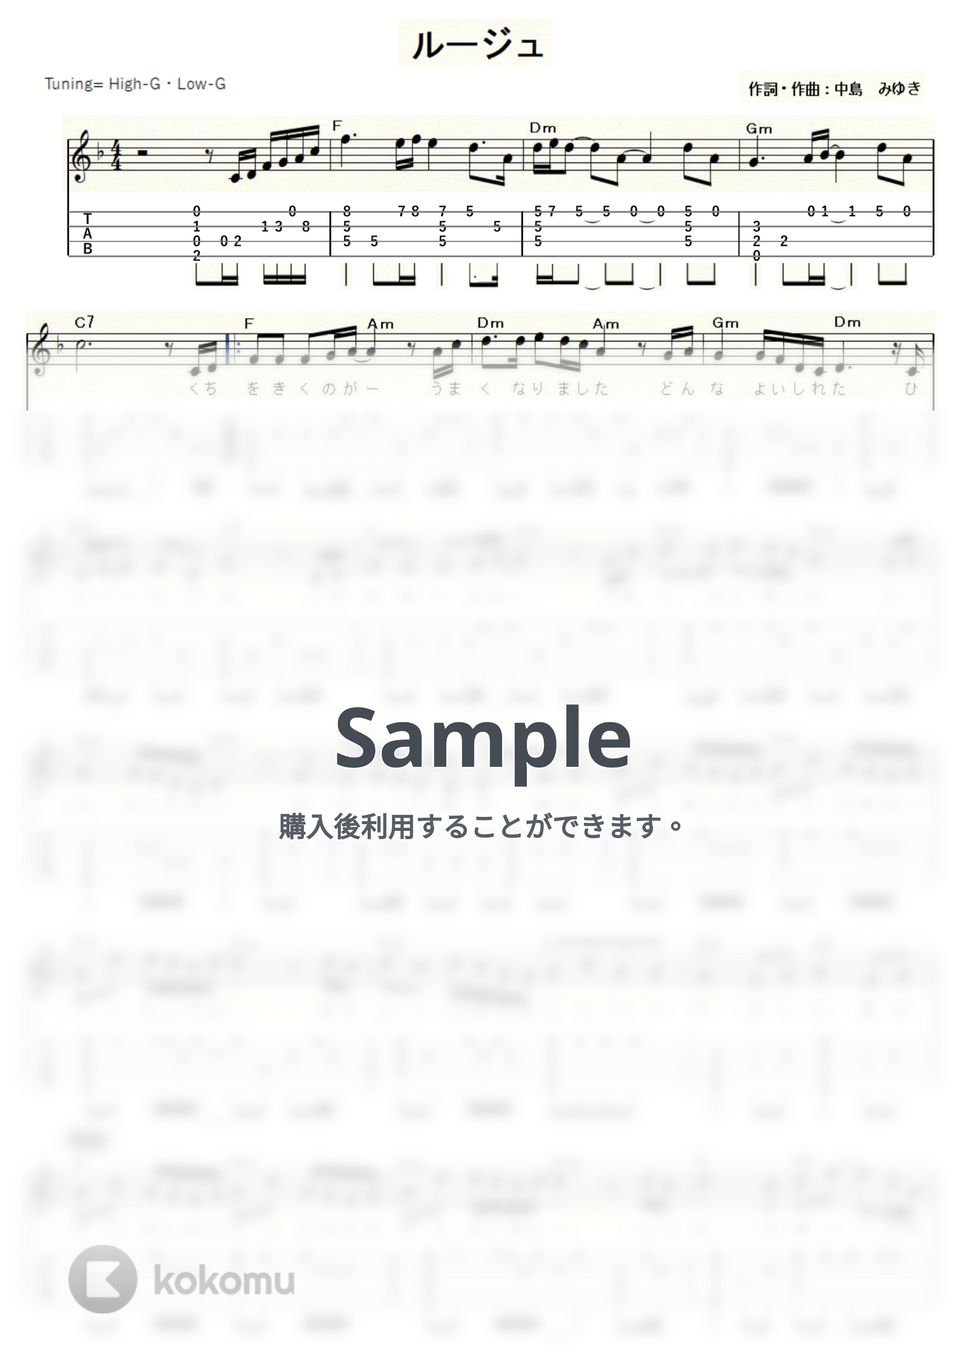 ちあきなおみ - ルージュ (ｳｸﾚﾚｿﾛ/High-G・Low-G/中級) by ukulelepapa